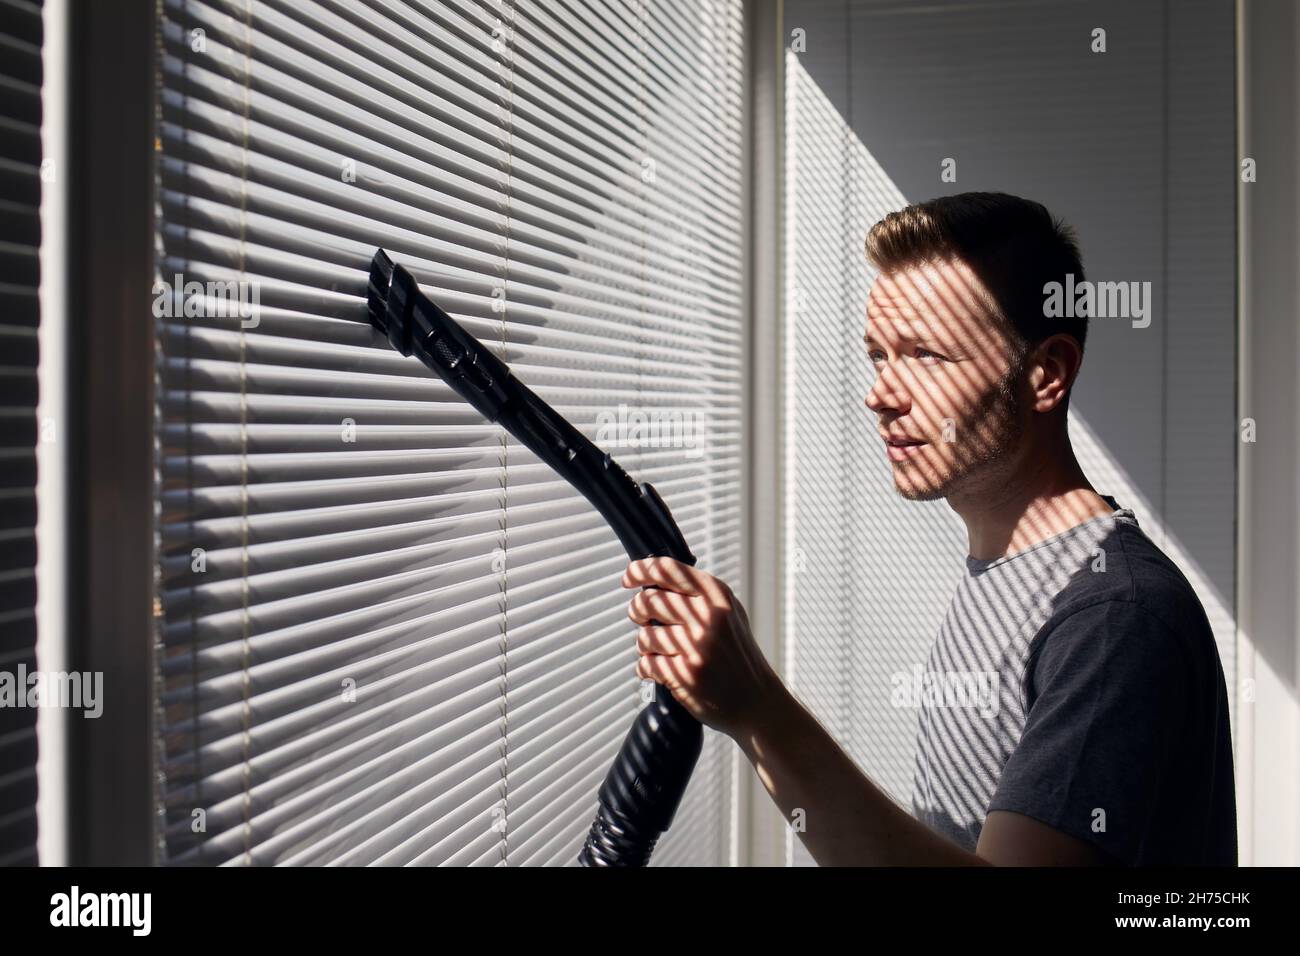 Mann, der zu Hause mit dem Staubsauger Staub von der Fensterblende reinigt. Themen Hausarbeit und Housekeeping. Stockfoto